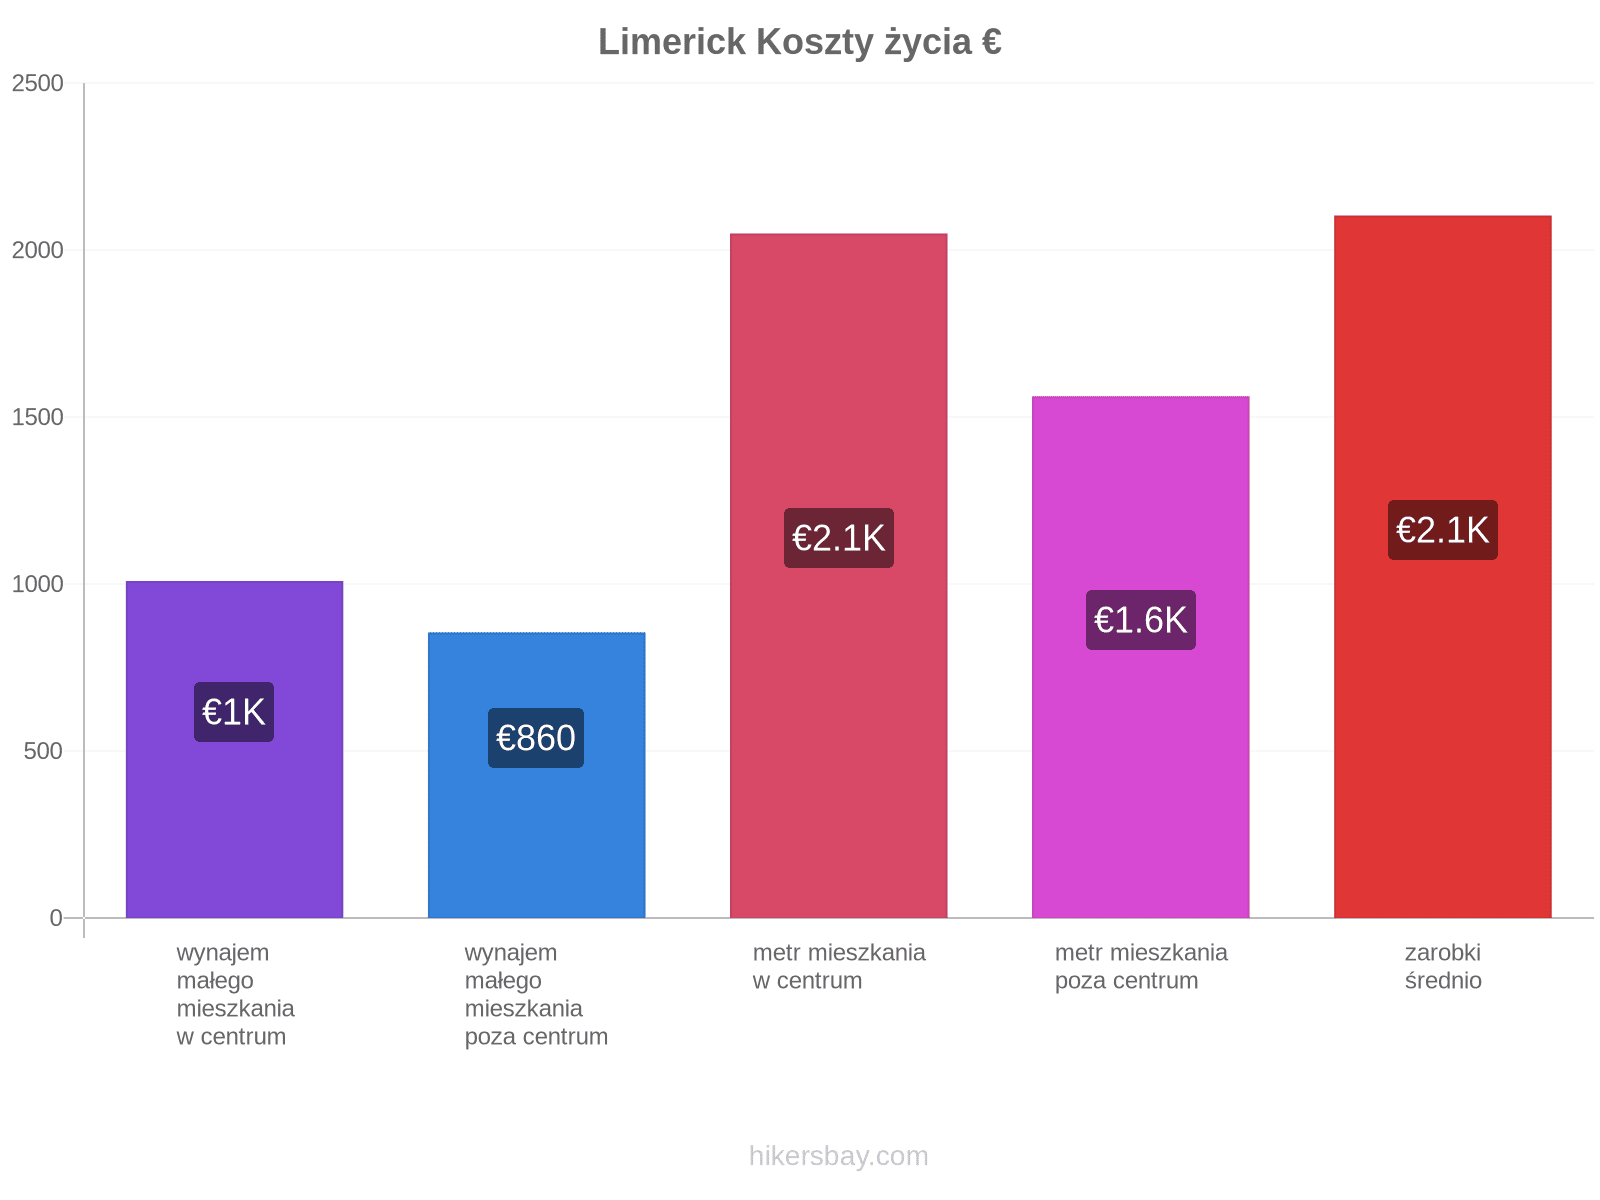 Limerick koszty życia hikersbay.com